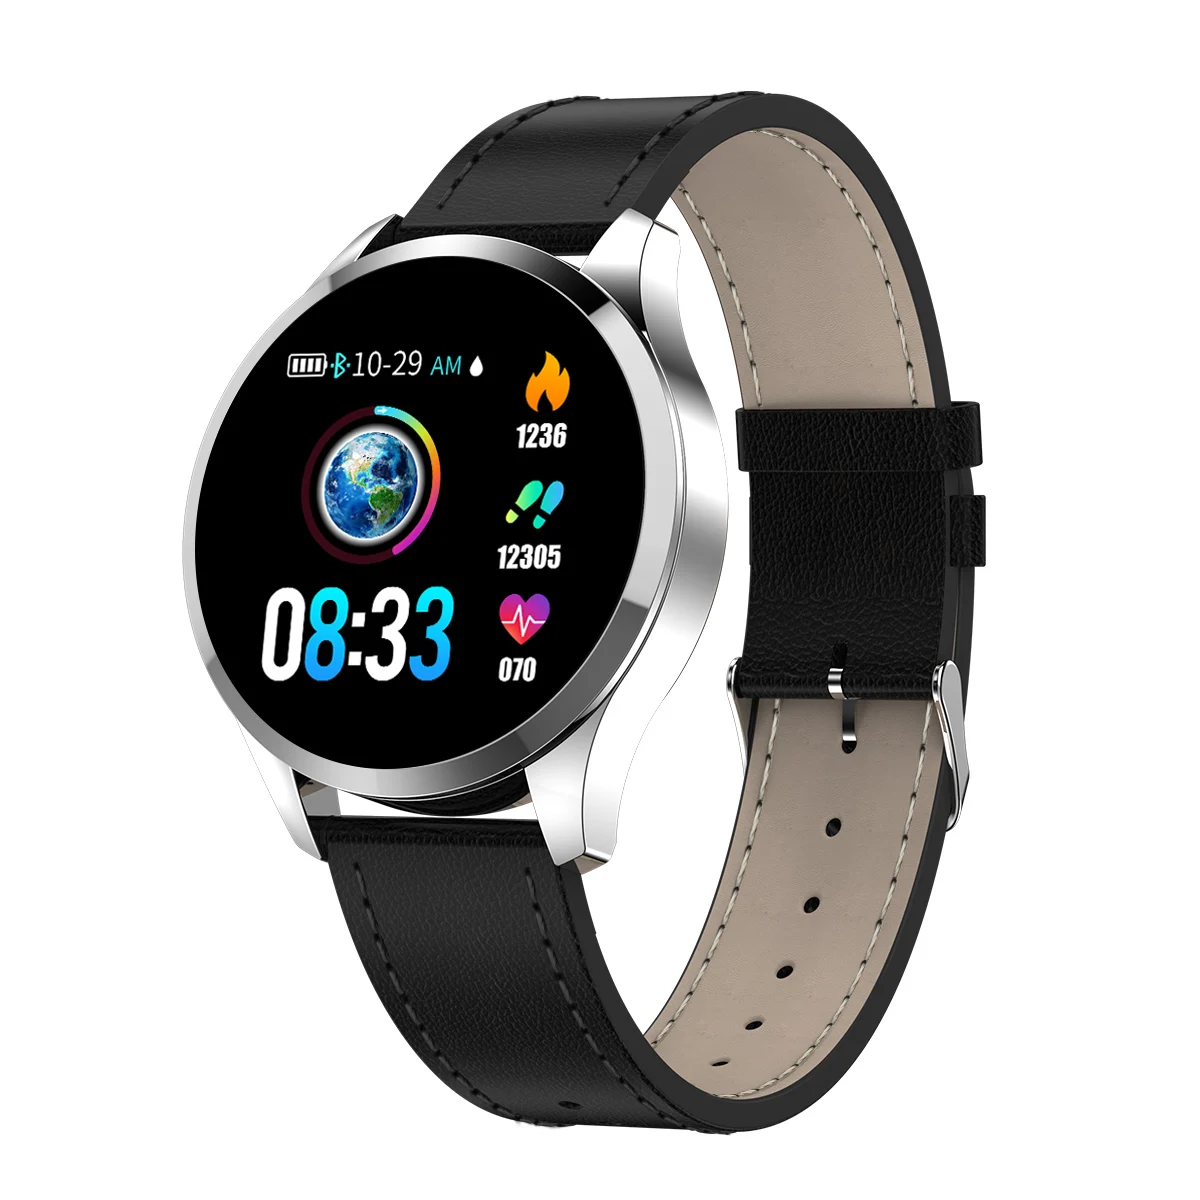 Новая одежда Q9 1" ips большой экран Смарт часы водонепроницаемый HR датчик кровяного давления монитор Мода Фитнес умные часы для мужчин - Цвет: Silver leather Strap